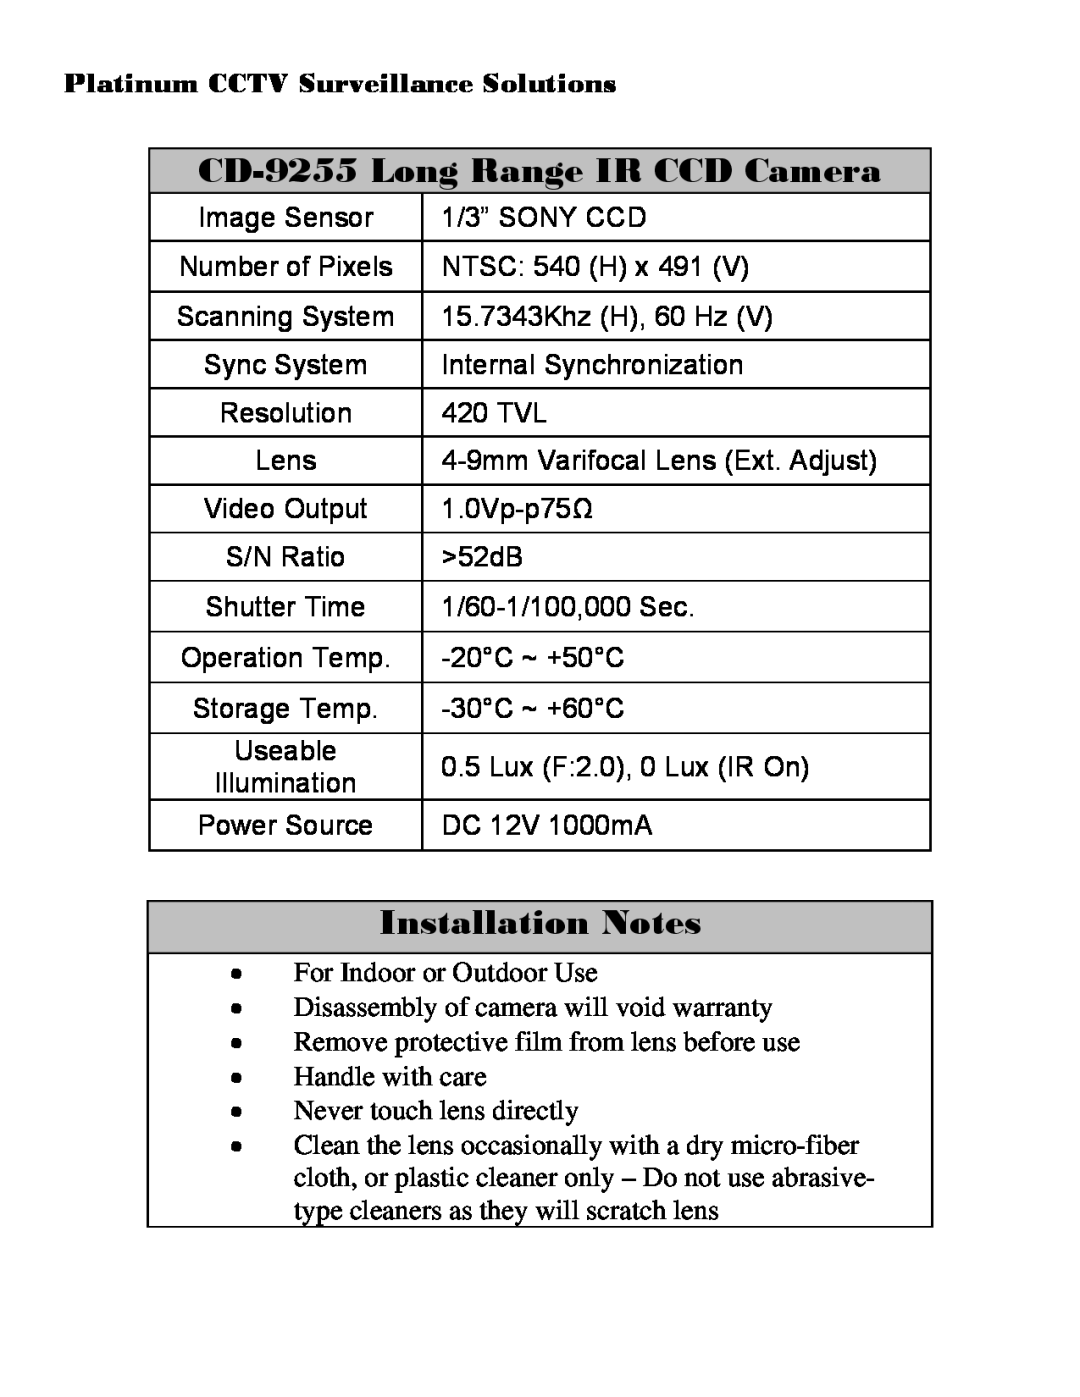 Sony installation manual CD-9255 Long Range IR CCD Camera, Installation Notes, Platinum CCTV Surveillance Solutions 